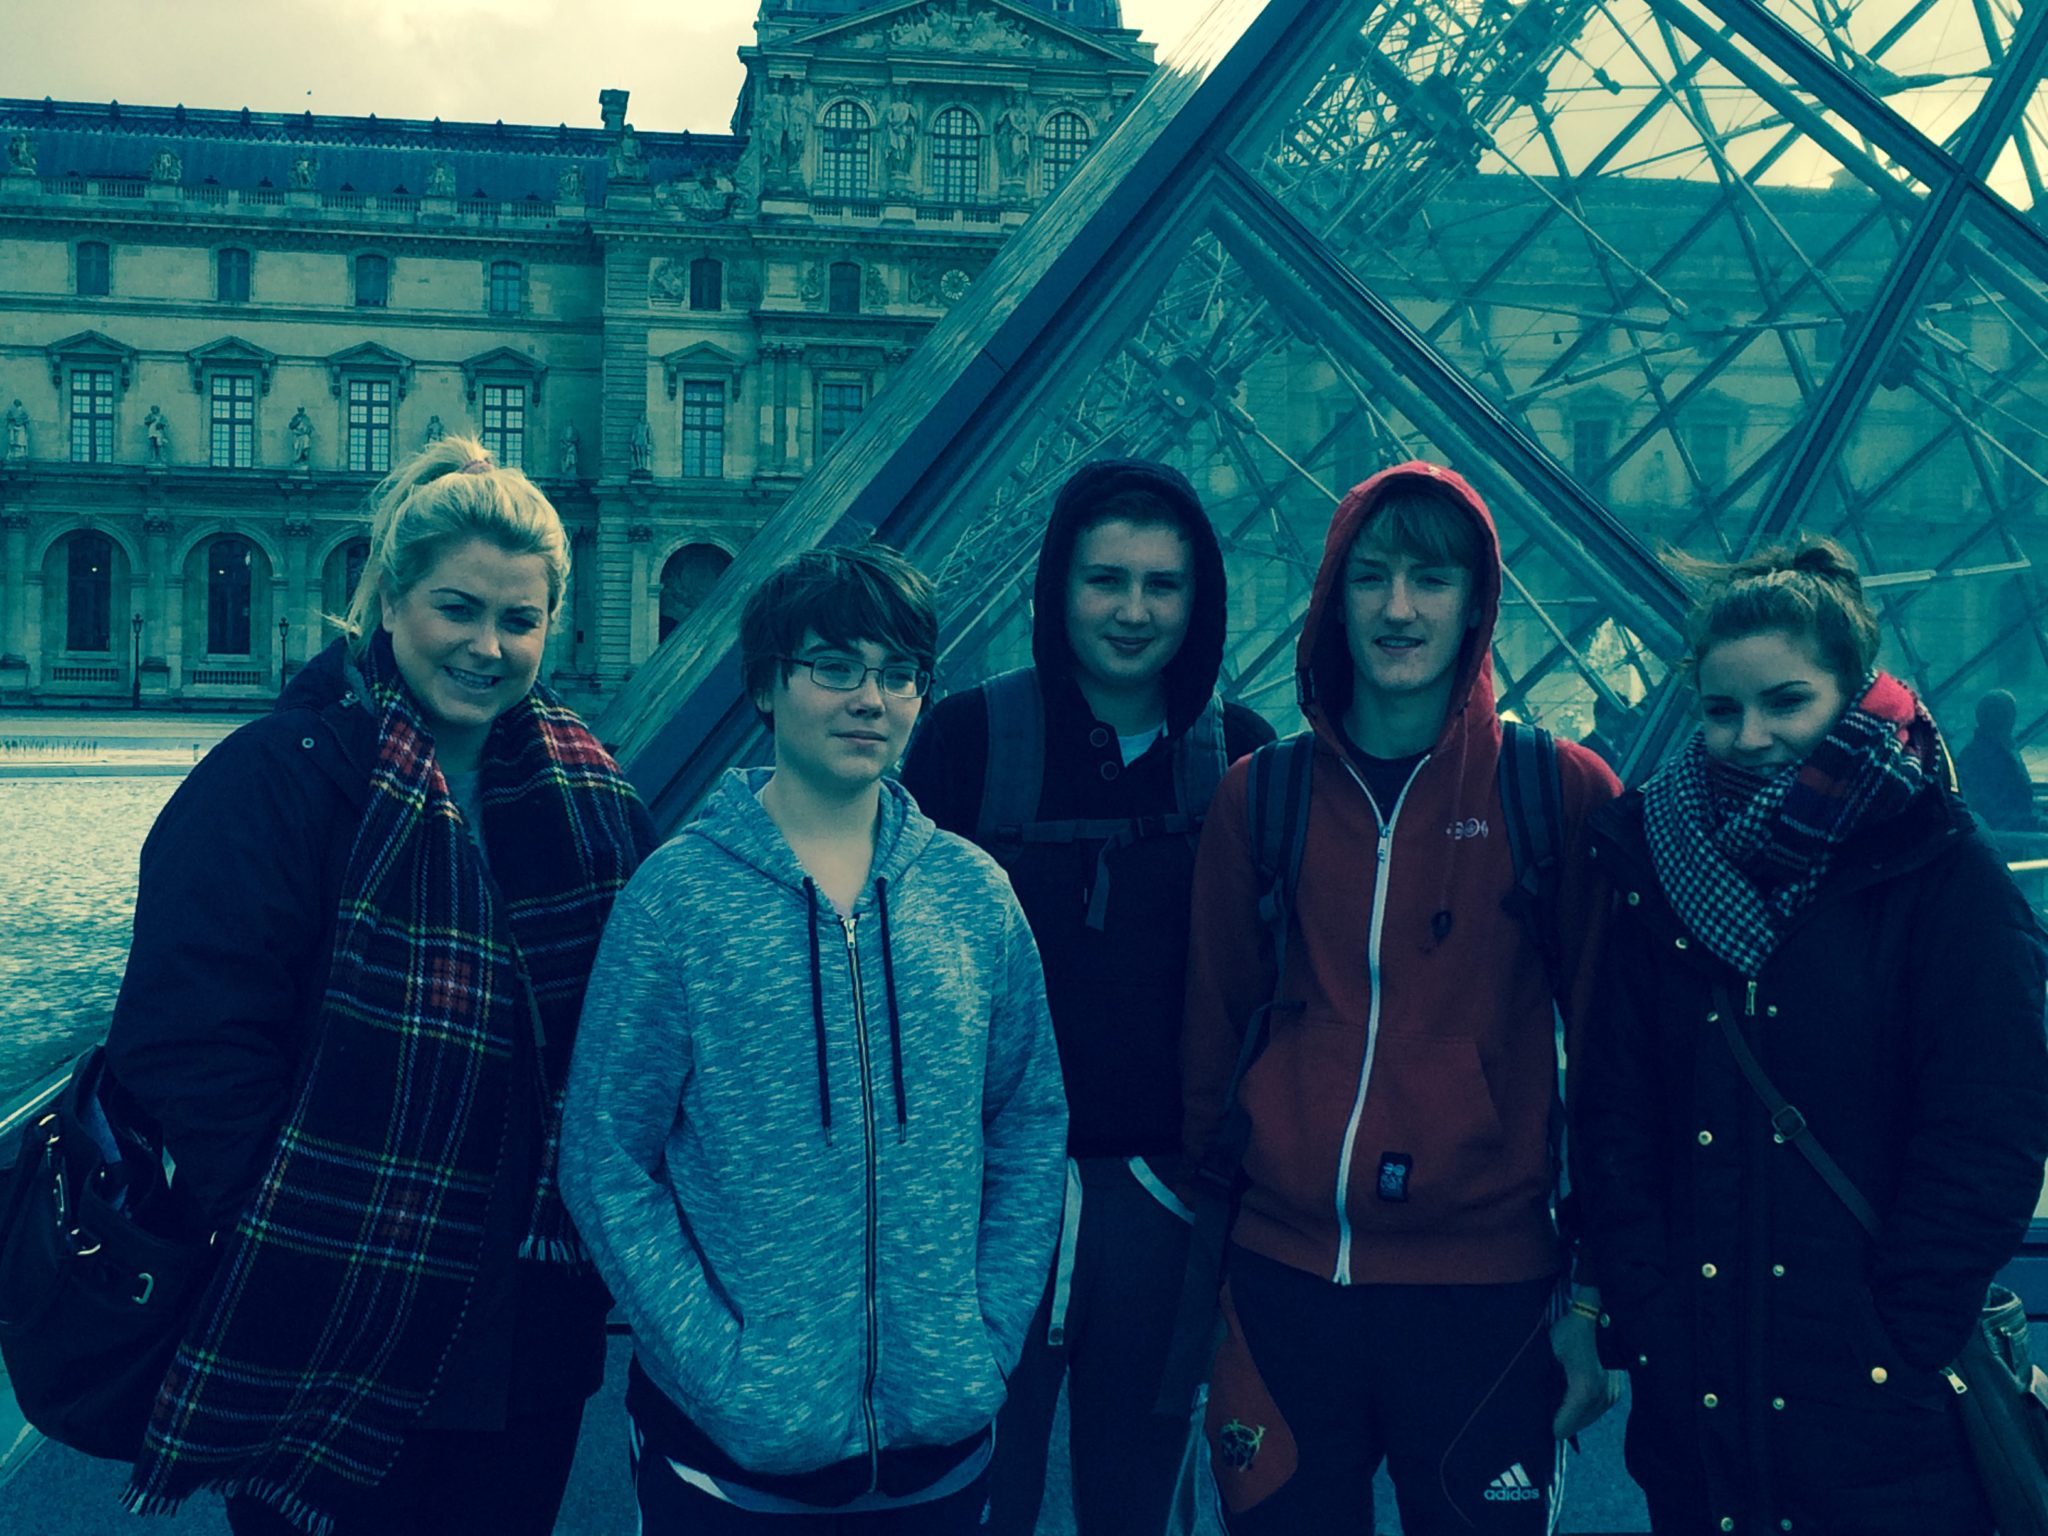 Visiting the Louvre on the Desmond College Paris Tour 2015